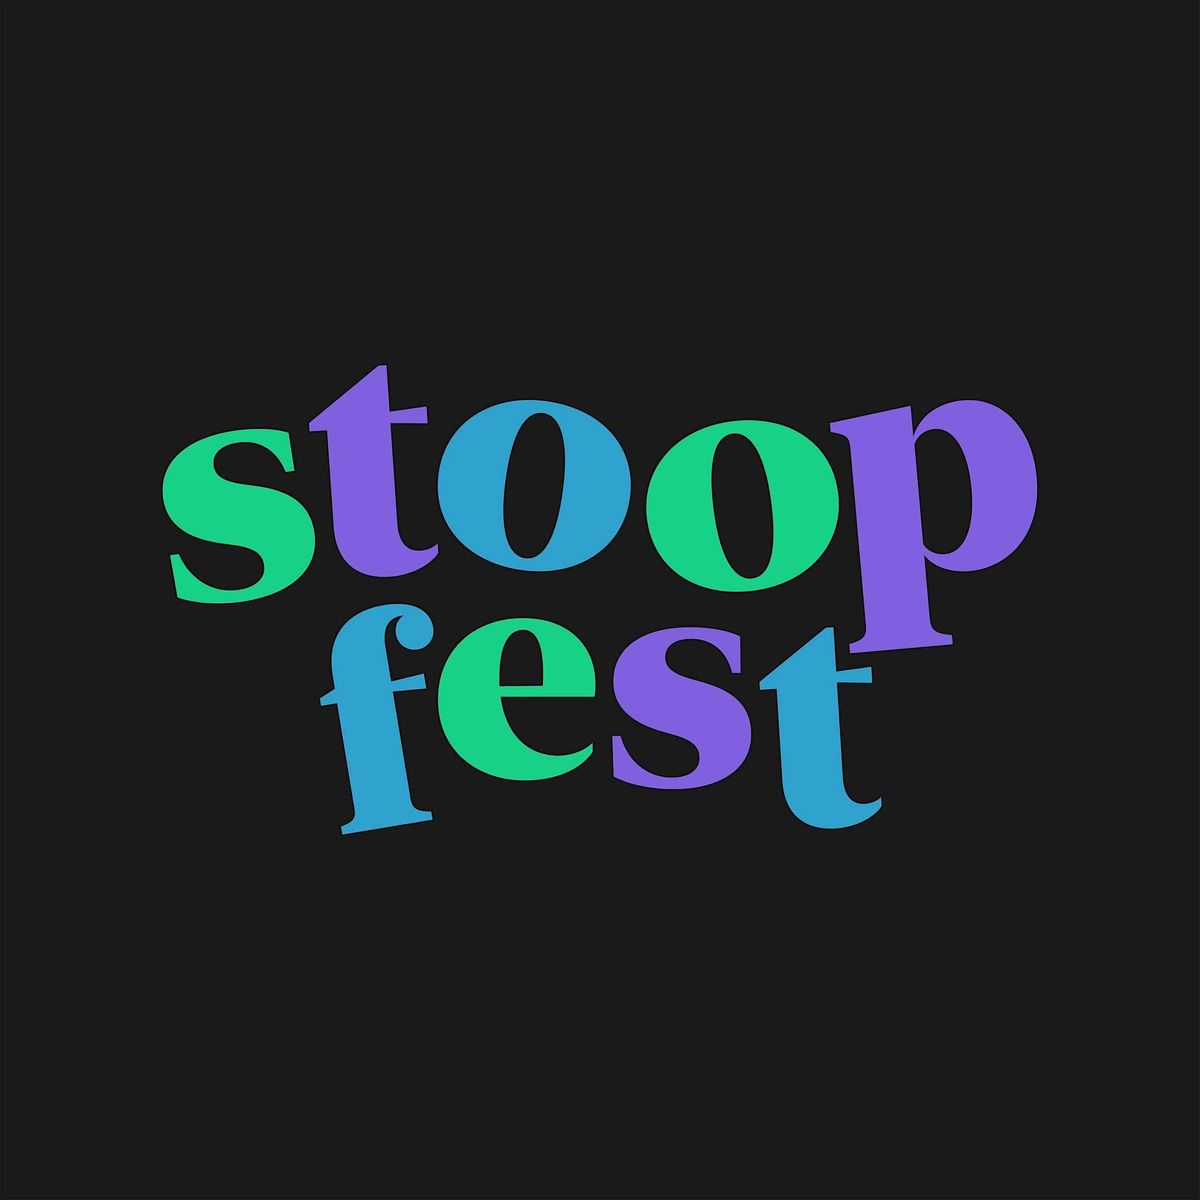 Stoopfest 2024